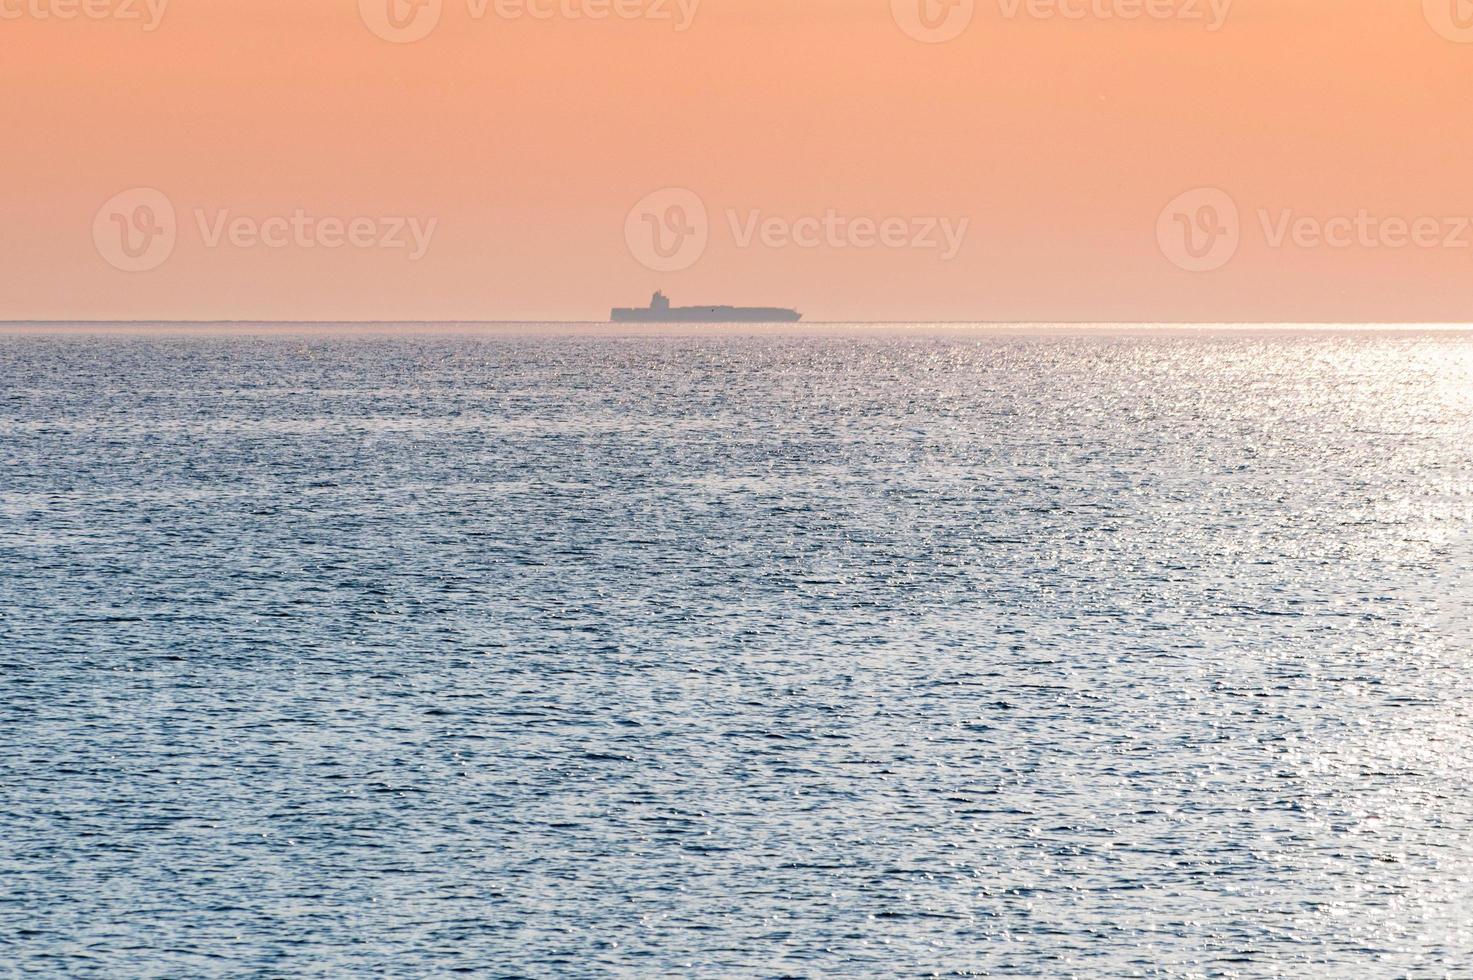 barcaça no belo pôr do sol. ancoragem para navios, copie o espaço. incrível paisagem marítima à noite, vista de viagem de tirar o fôlego. foto